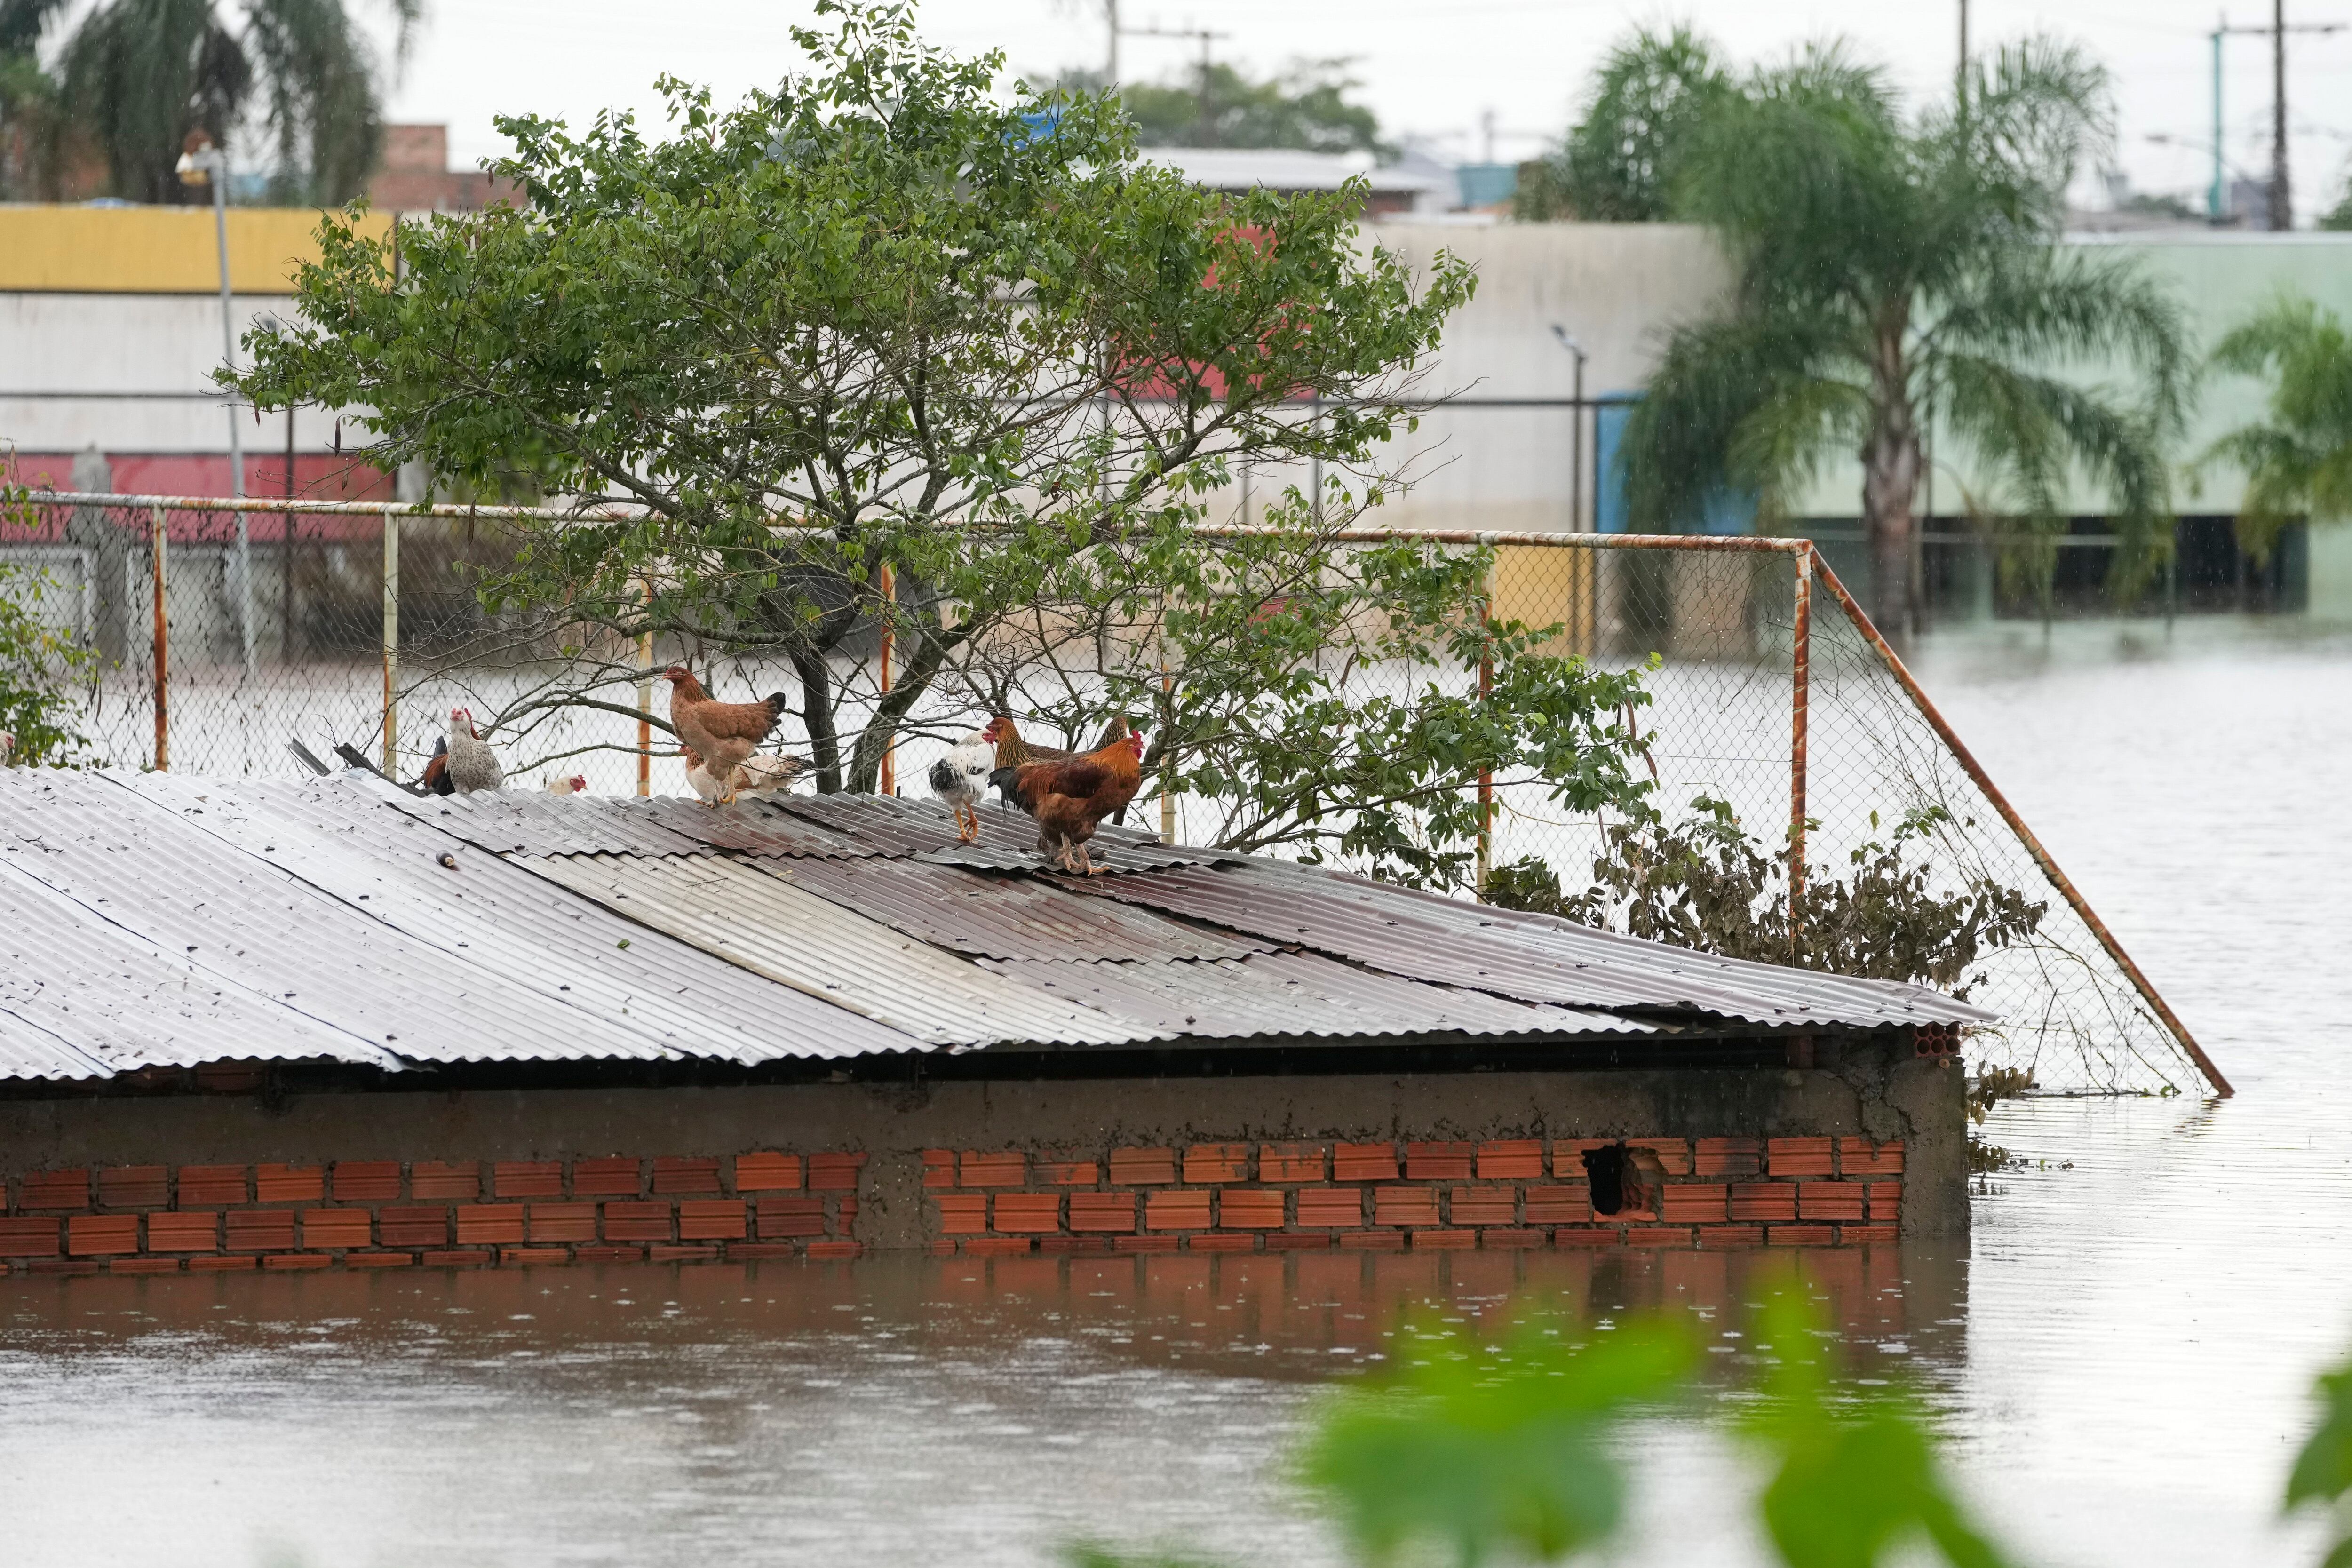 Varias gallinas, sobre el tejado de una casa anegada por las fuertes lluvias - crédito AP Foto/Andre Penner